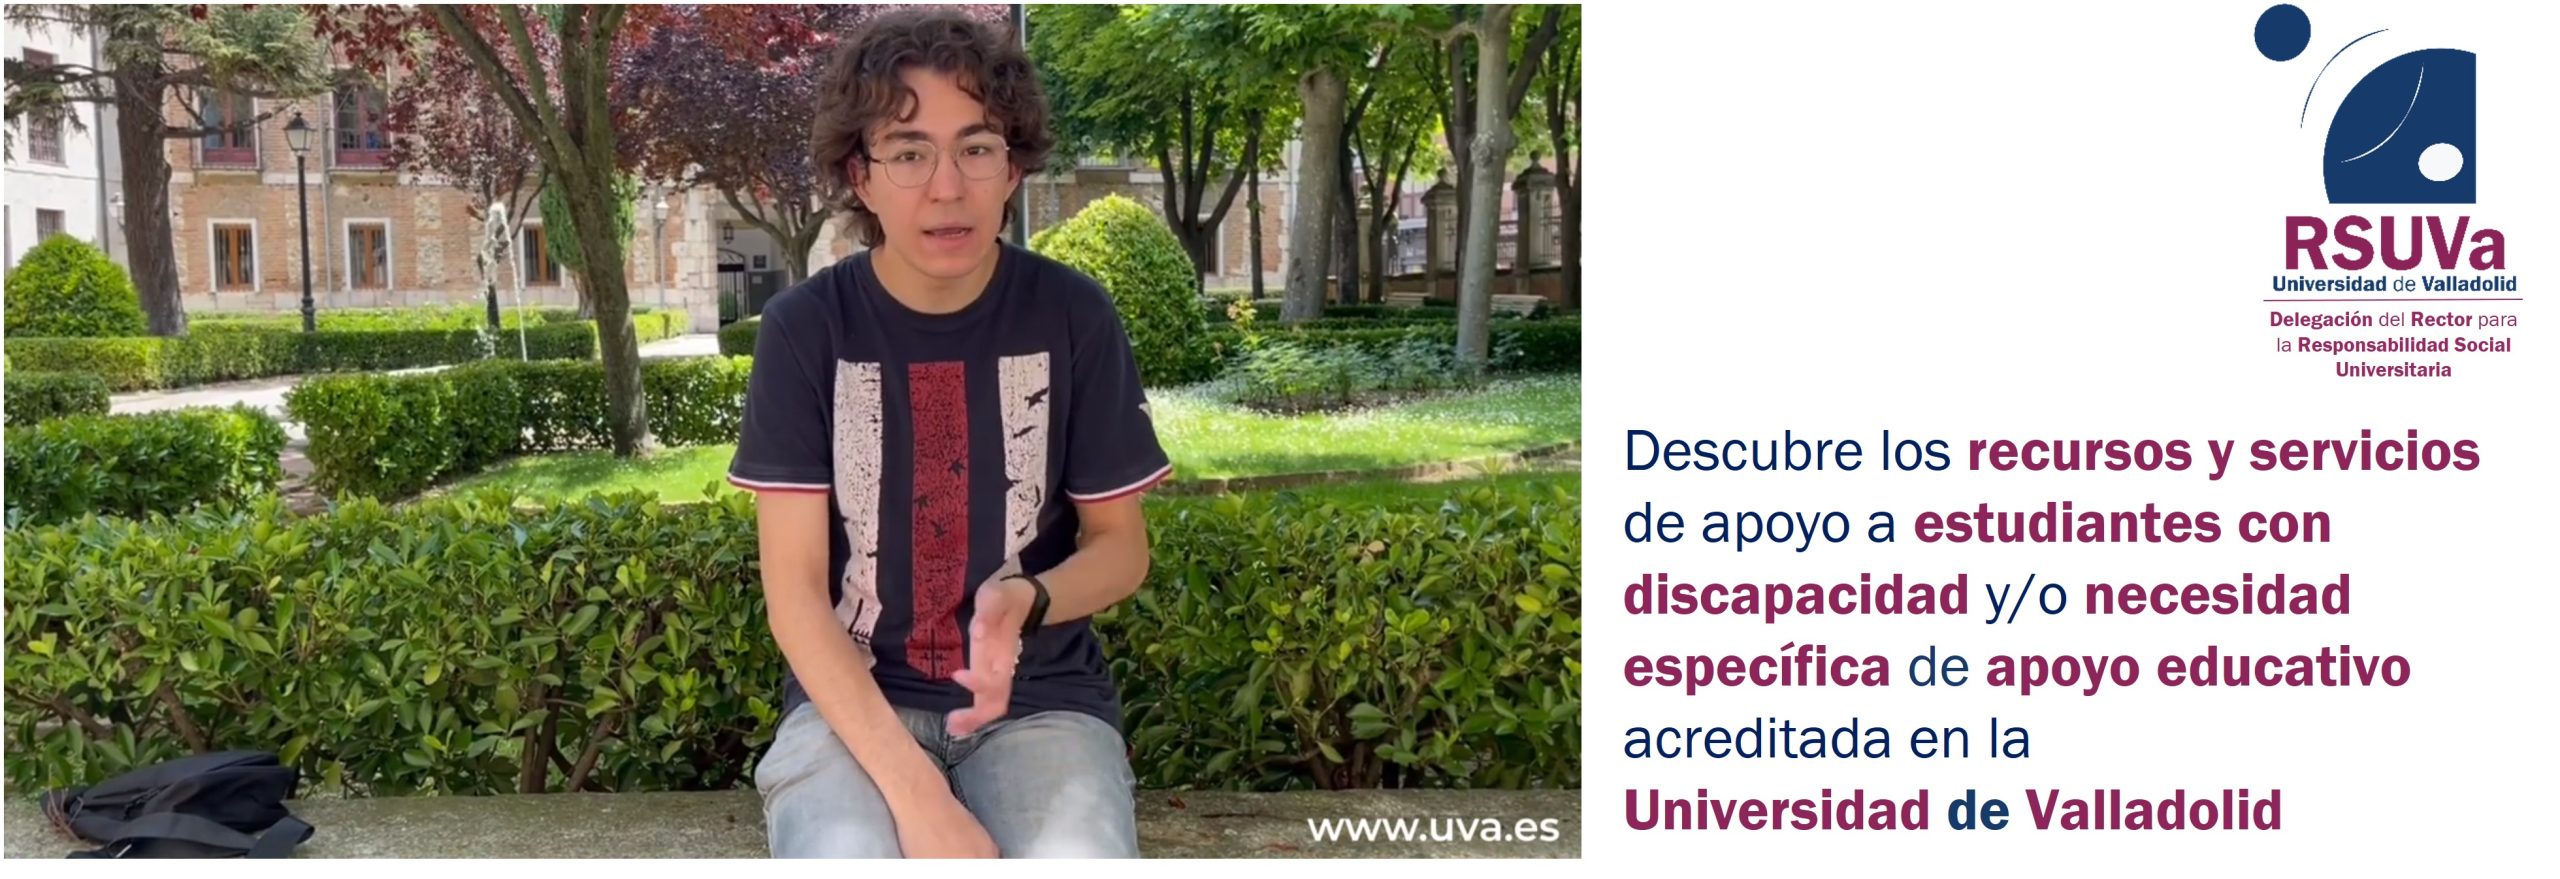 Descubre los recursos y servicios de apoyo a estudiantes con discapacidad y/o necesidad específica de apoyo educativo acreditada en la Universidad de Valladolid